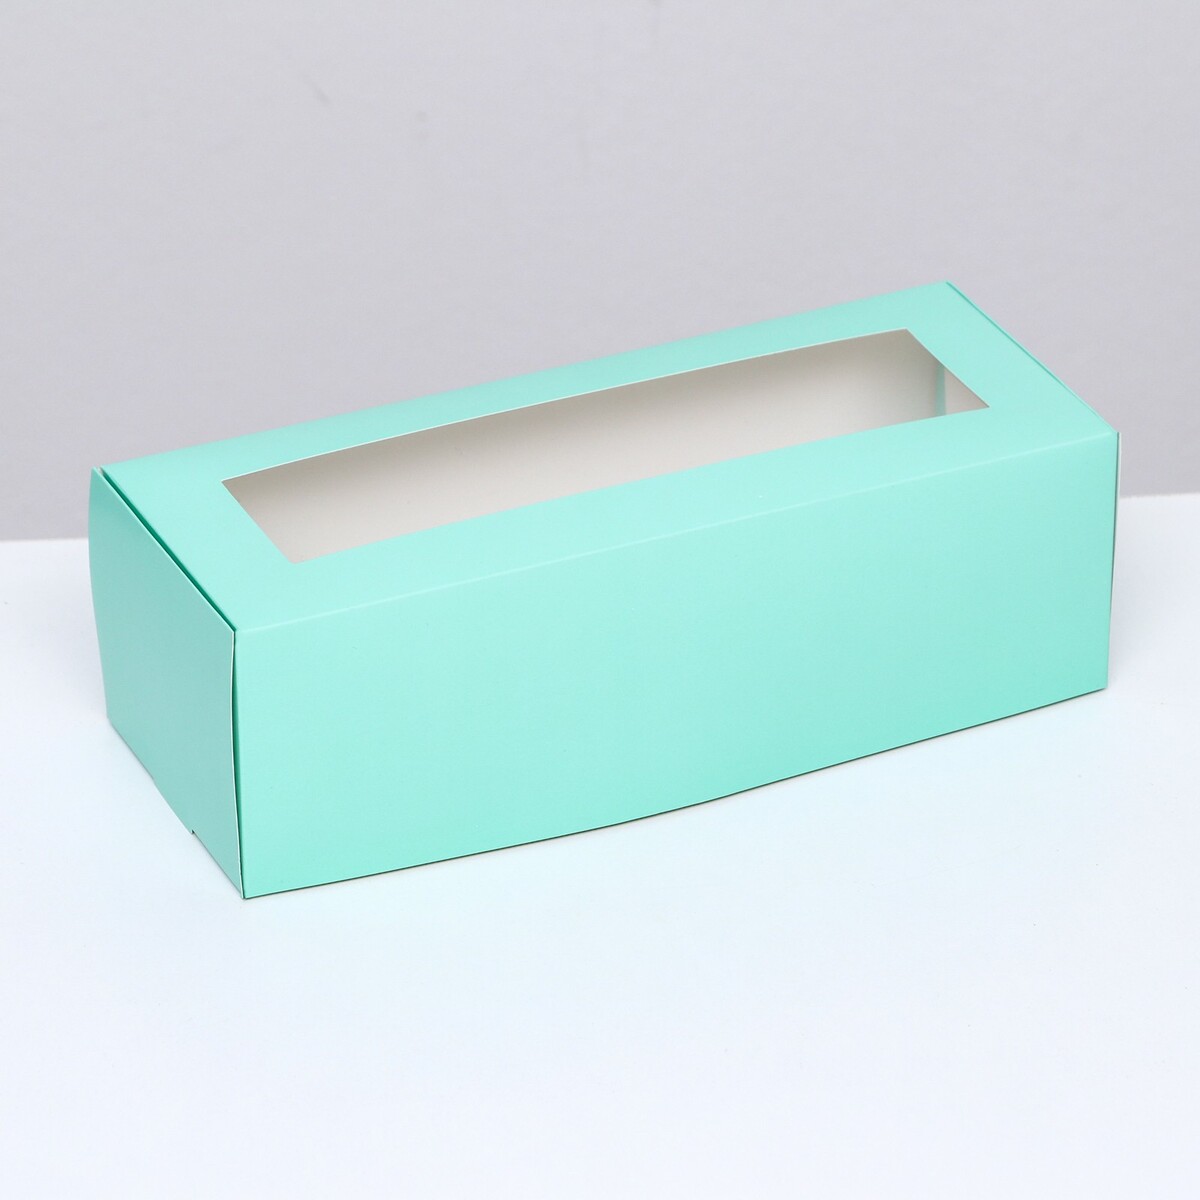 Коробка складная с окном под рулет, зеленая, 26 х 10 х 8 см коробка под рулет белая 16 5 х 11 х 9 см